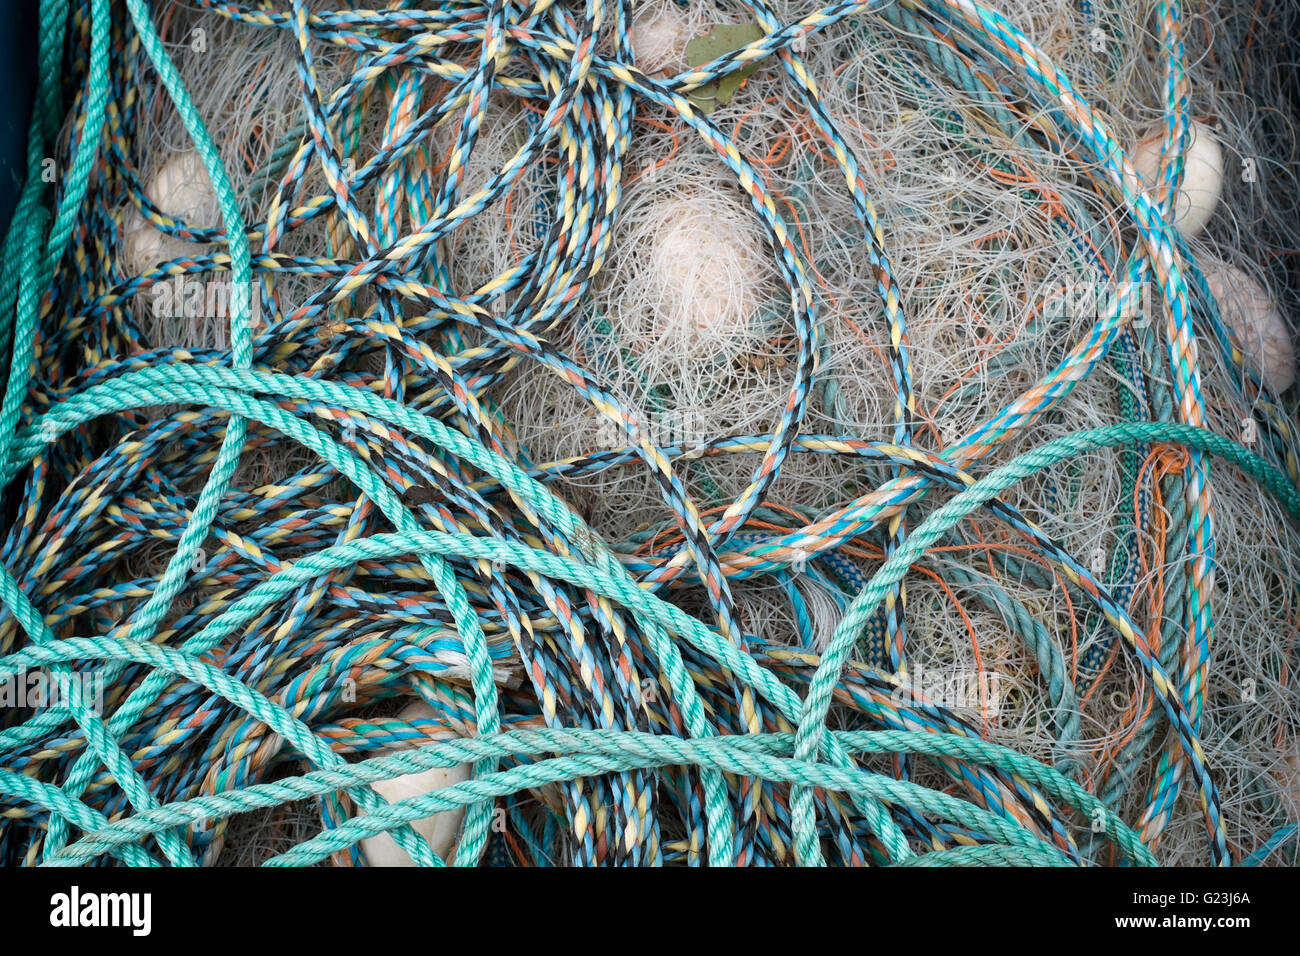 Las redes de pesca y cuerdas en el colorido puerto de Mevagissey Cornwall Gran Bretaña Foto de stock